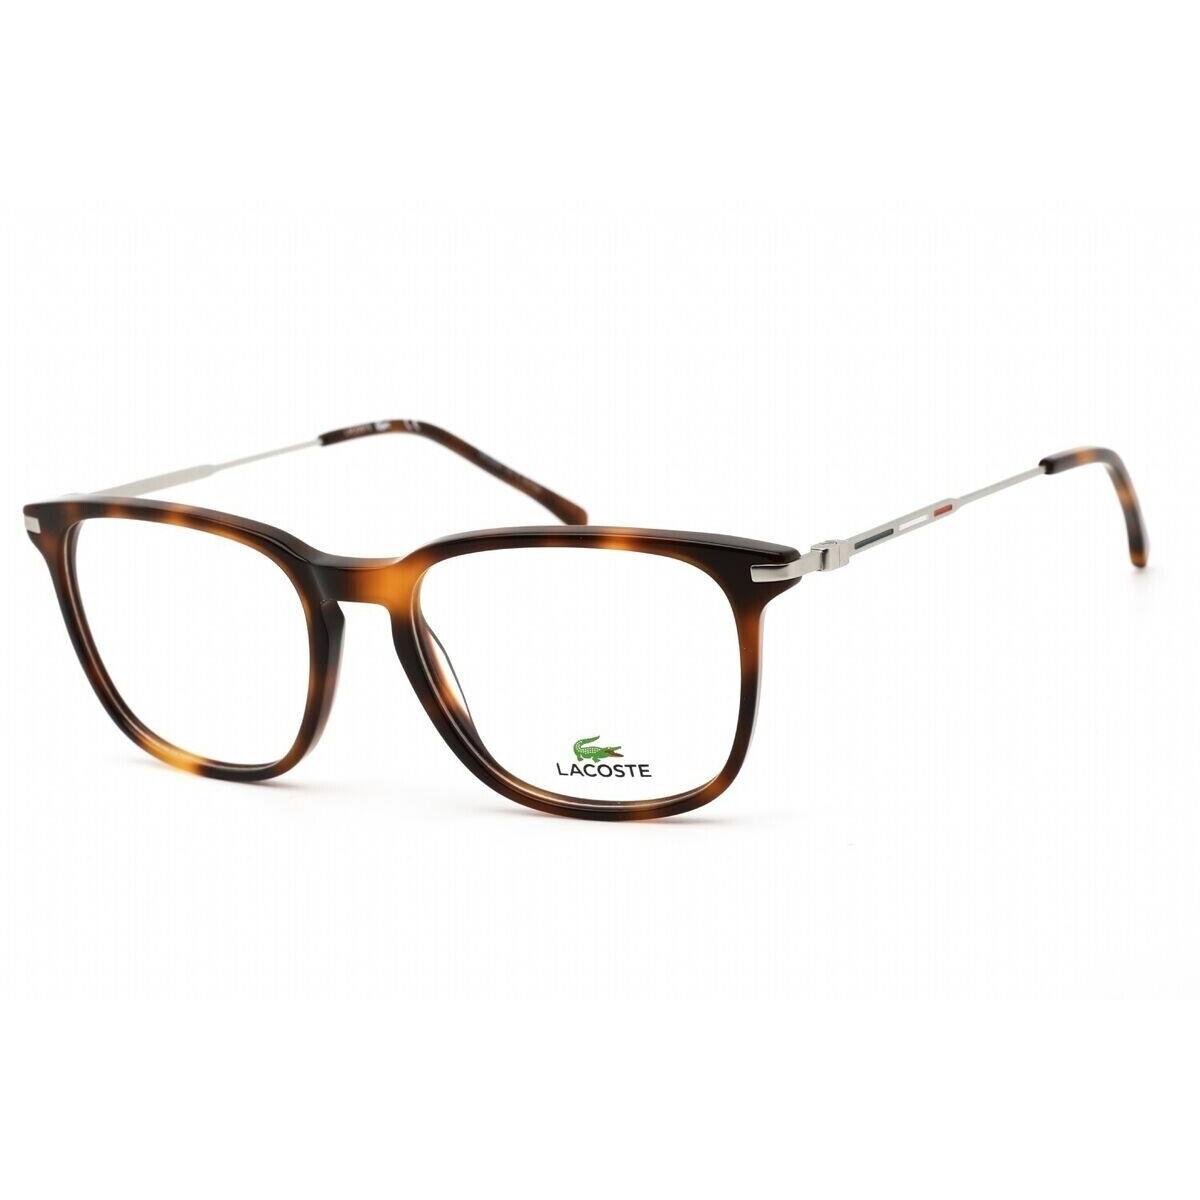 Lacoste L2603ND 214 54mm Havana Unisex Ophthalmic Rx Eyeglasses Frame - Frame: Brown